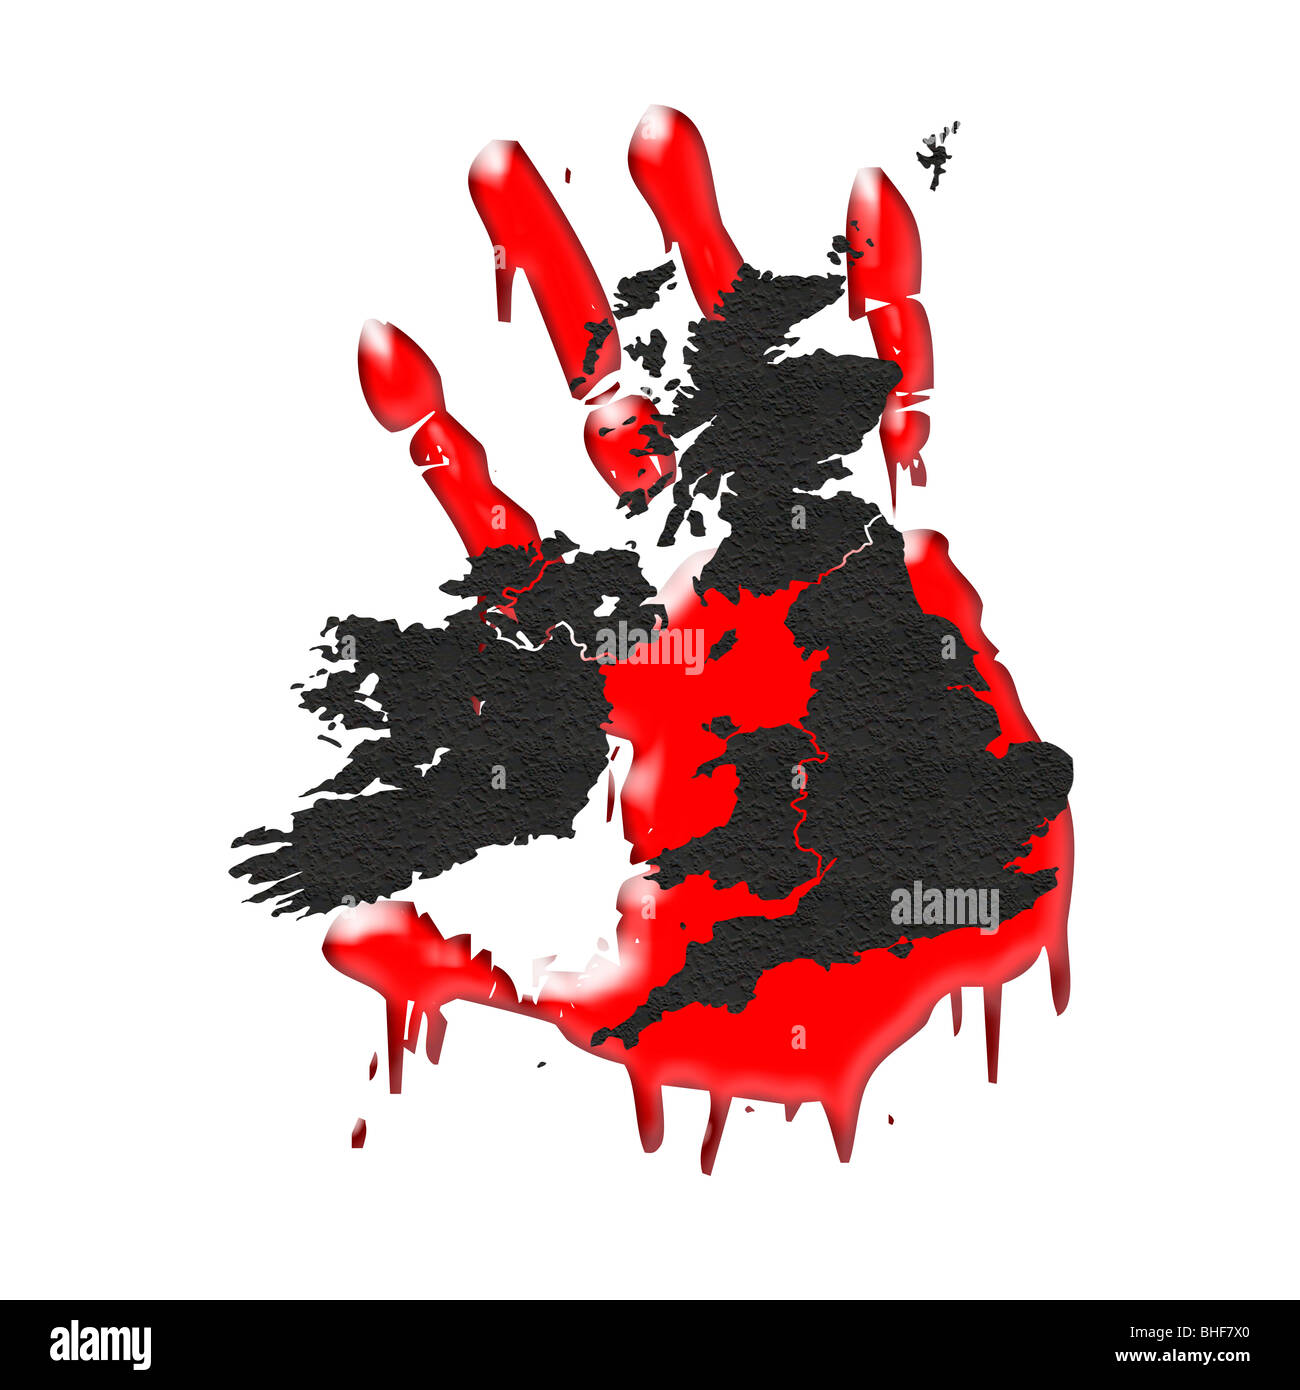 Carte du Royaume-Uni et Irlande superposée sur une main ! Conceptual Image représentant la peur et la violence dans la société Banque D'Images